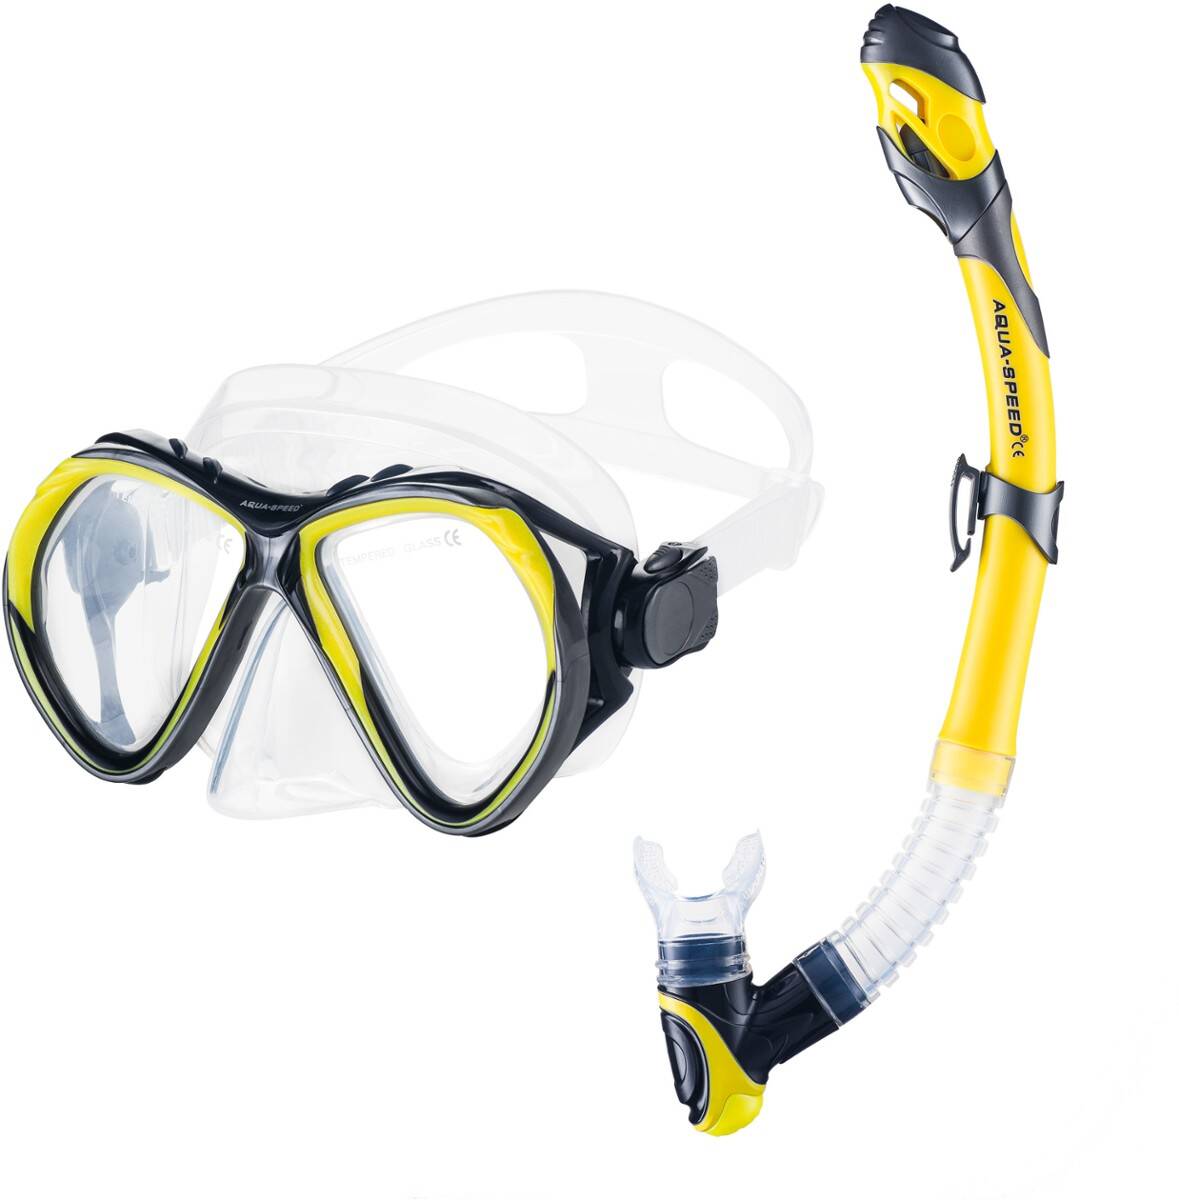 Mask + snorkel sets